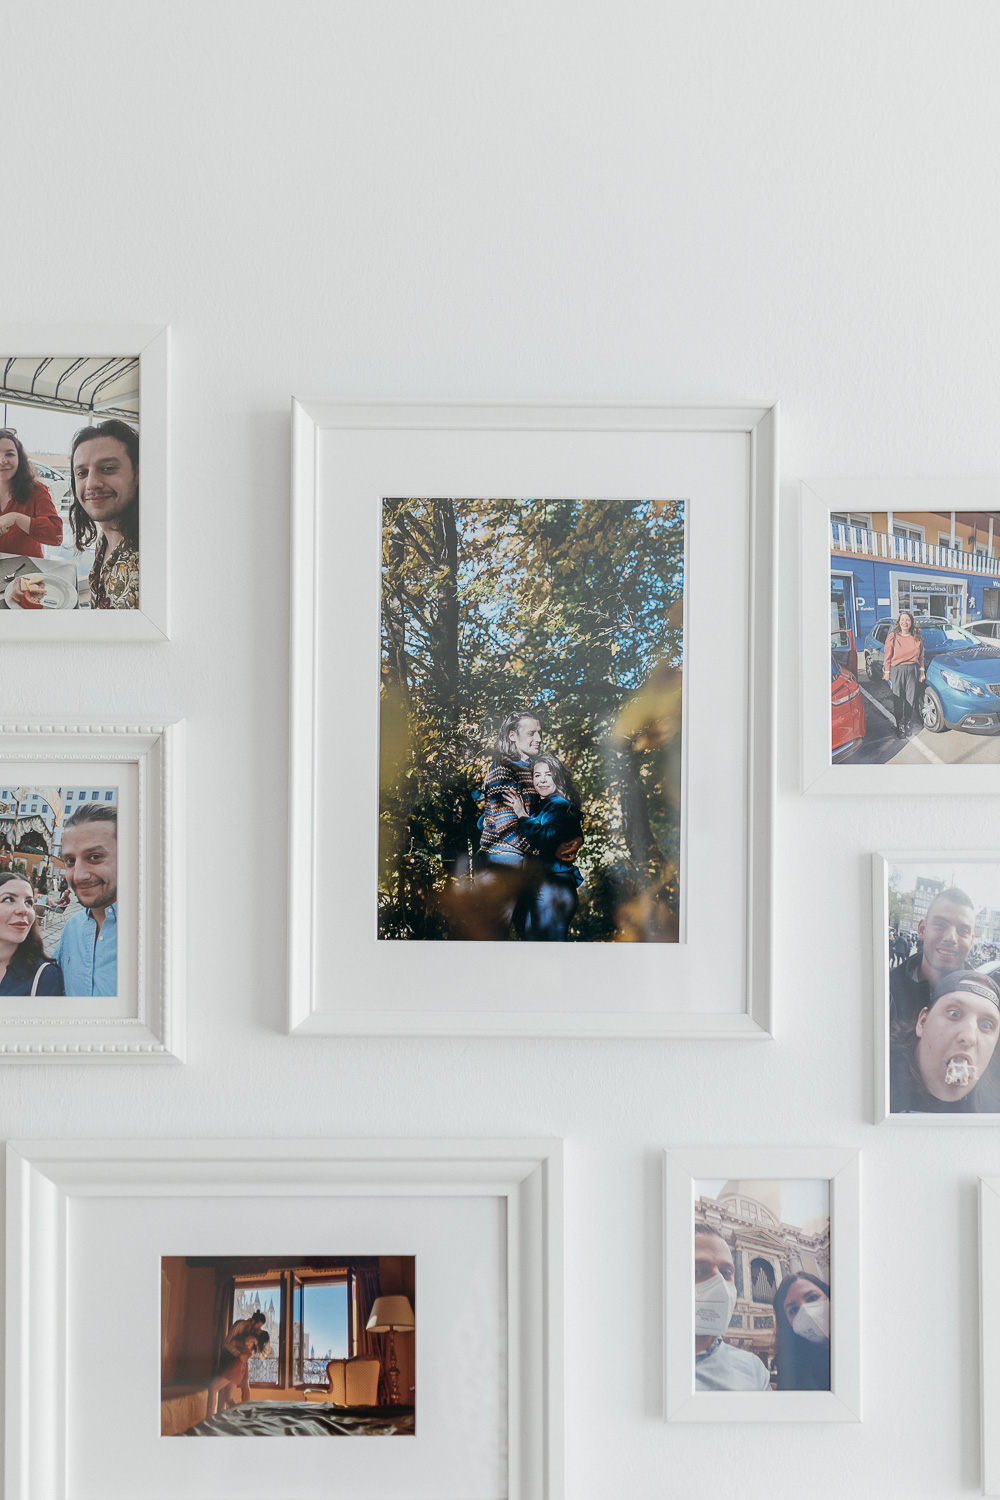 Fotos an der Wand, intimer Einstieg in die Hochzeit zu zweit